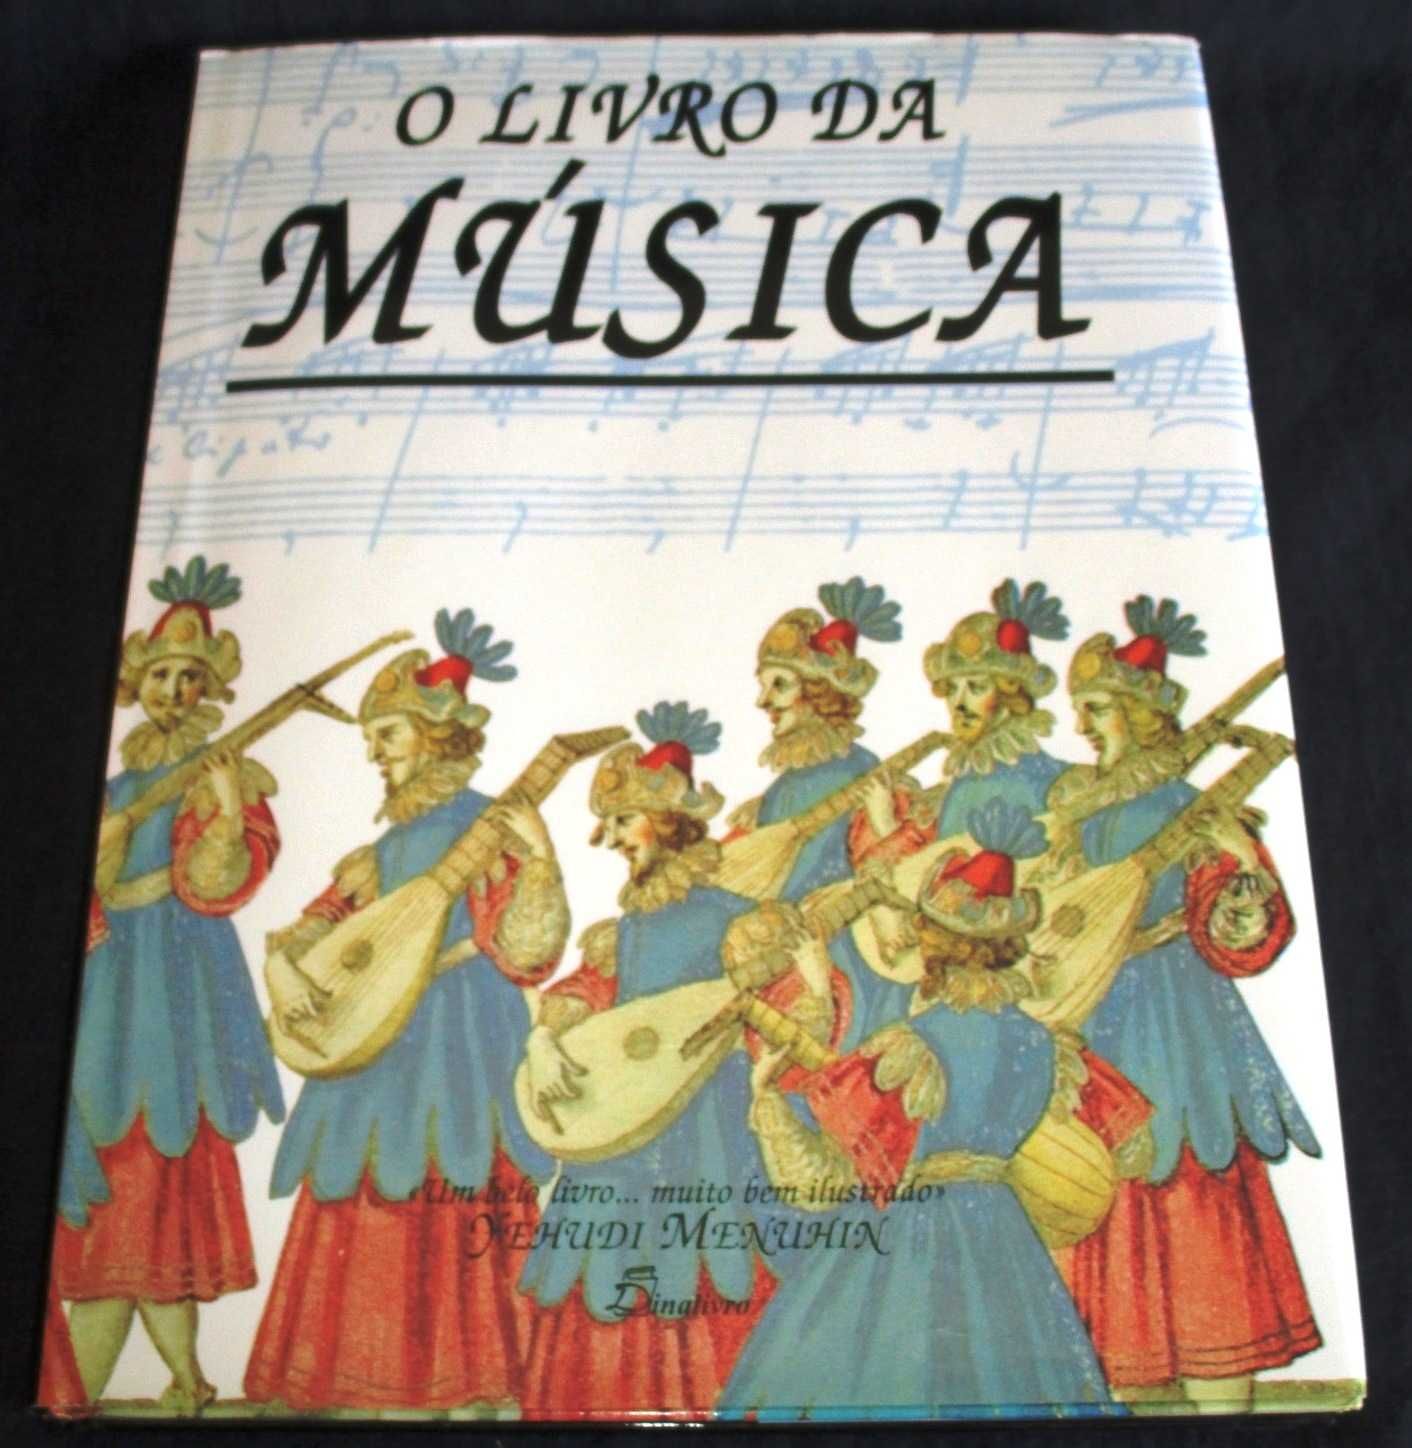 O Livro da Música Dinalivro 1997